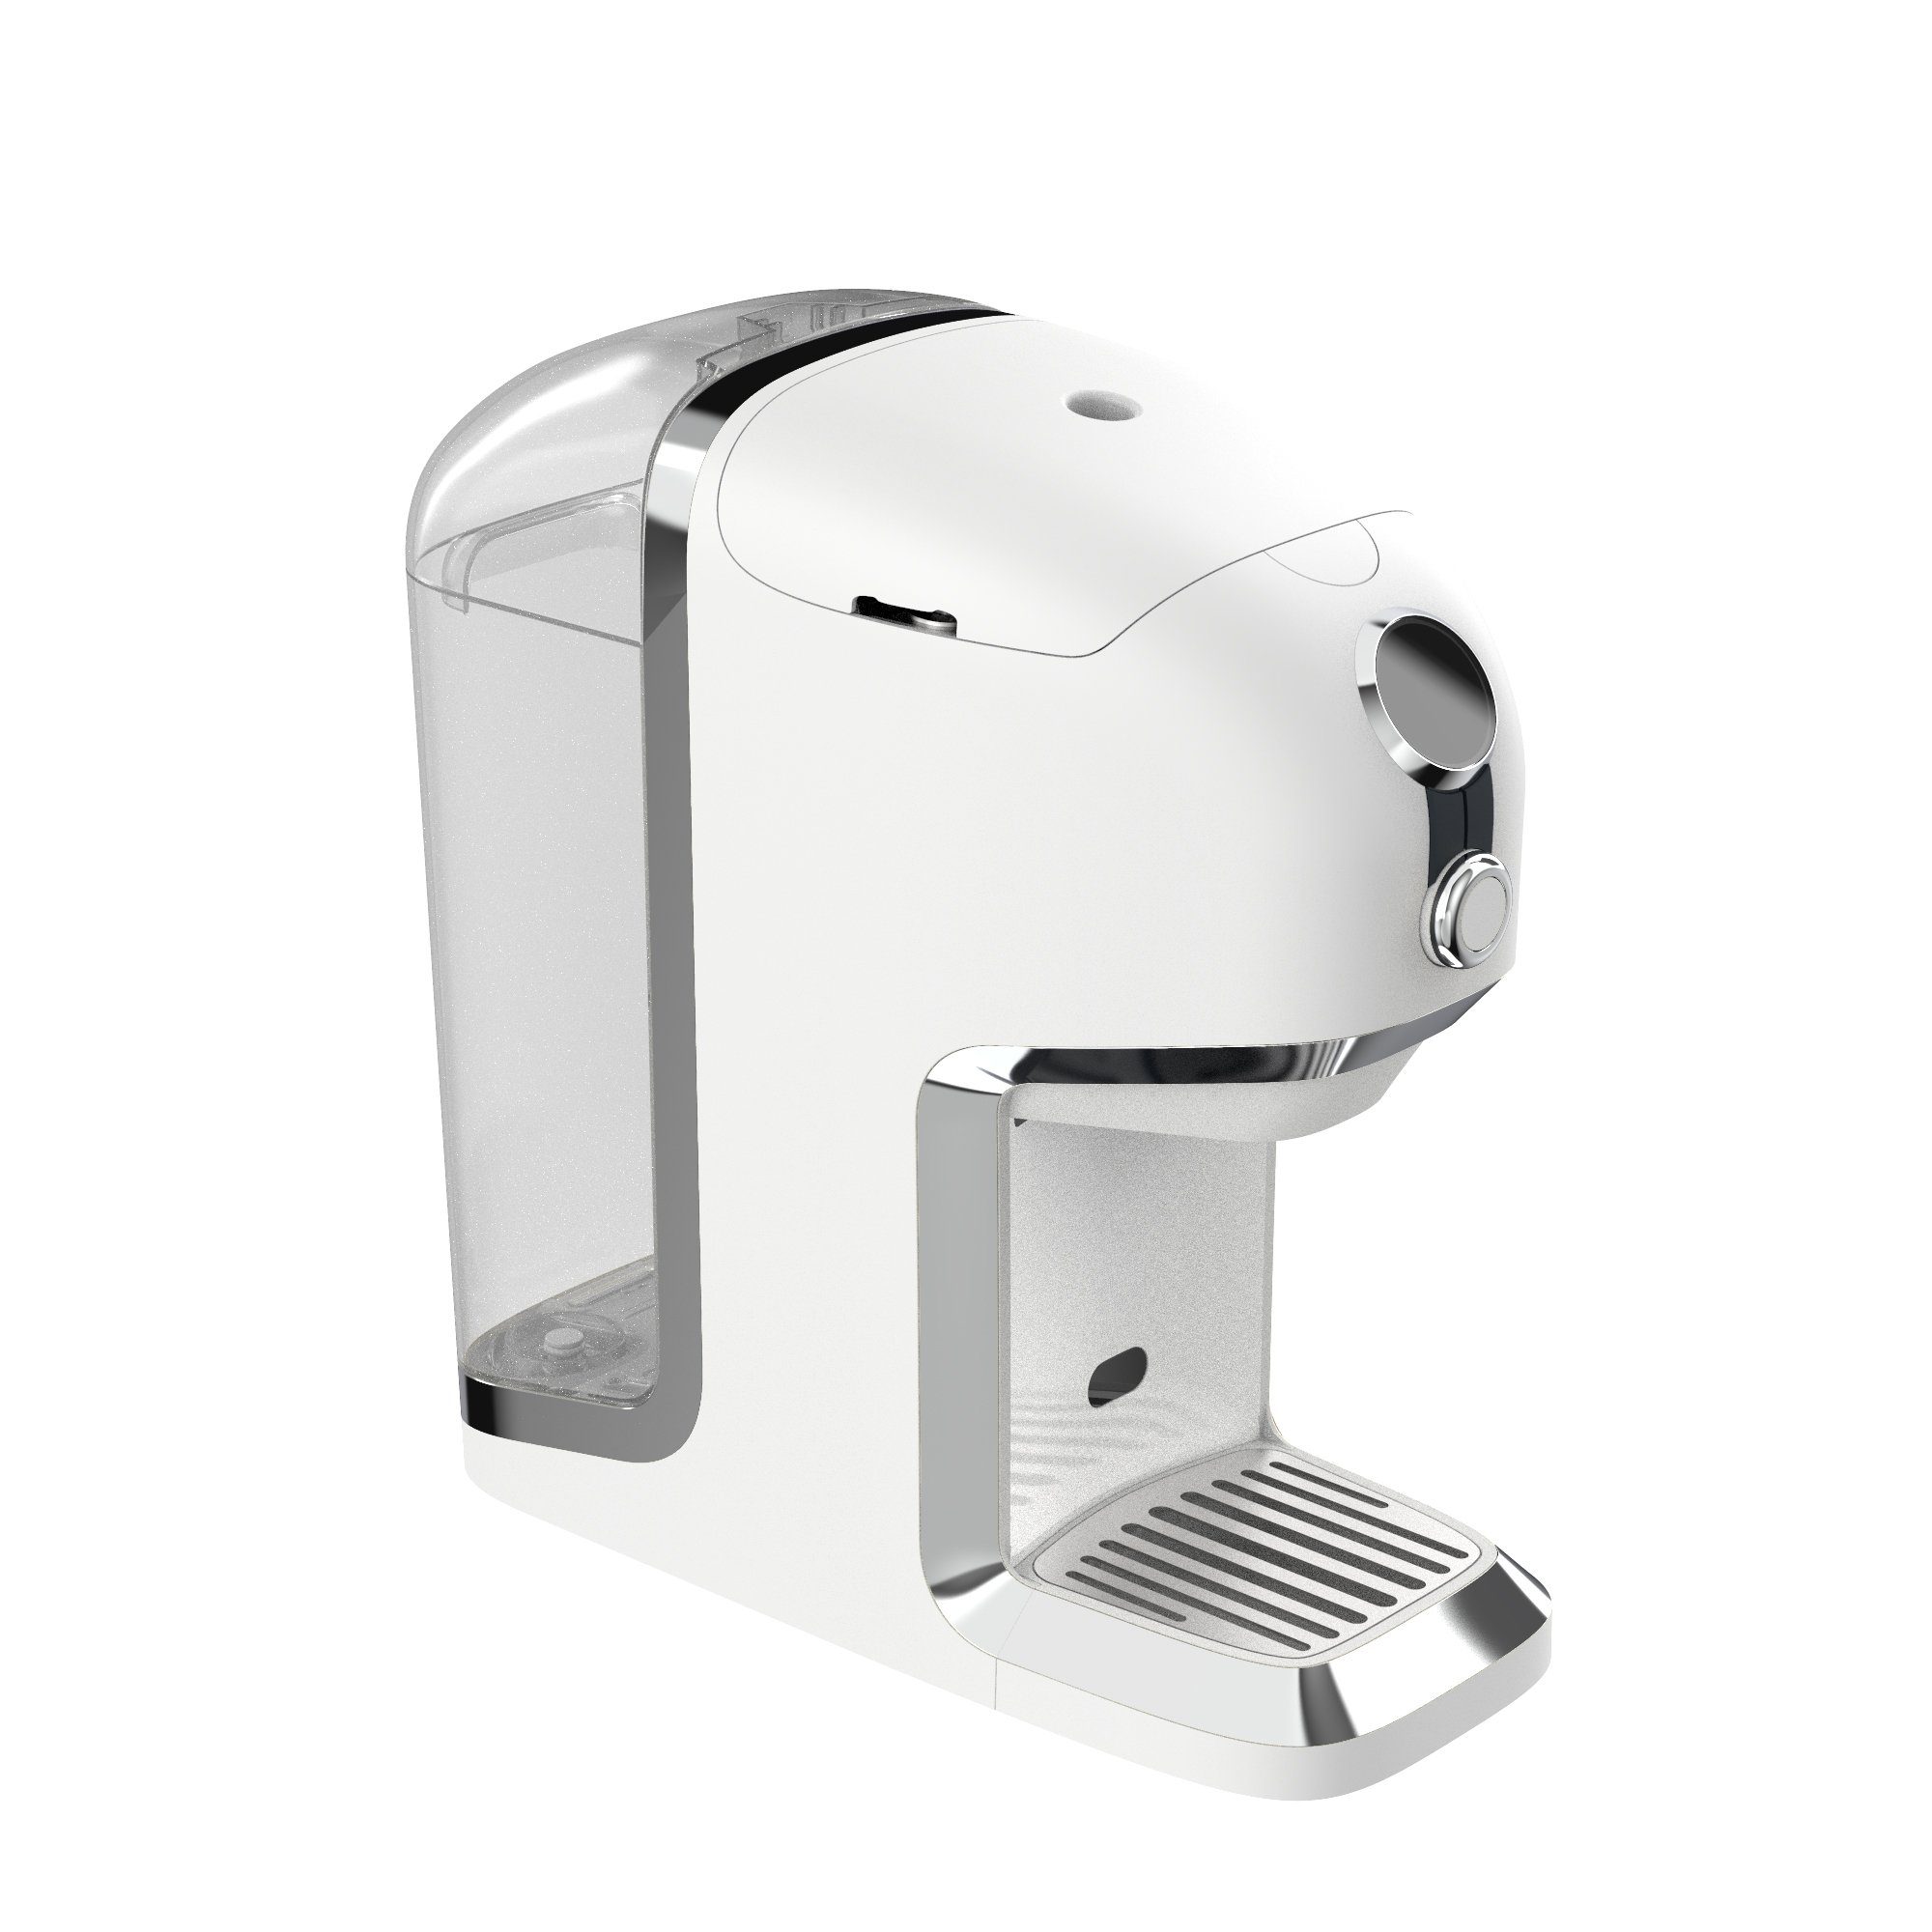 Super willkommen BRU Wasser-/Teekocher Praktisch Teemaschine, - Nachhaltig Konsistent weiß/chrome 